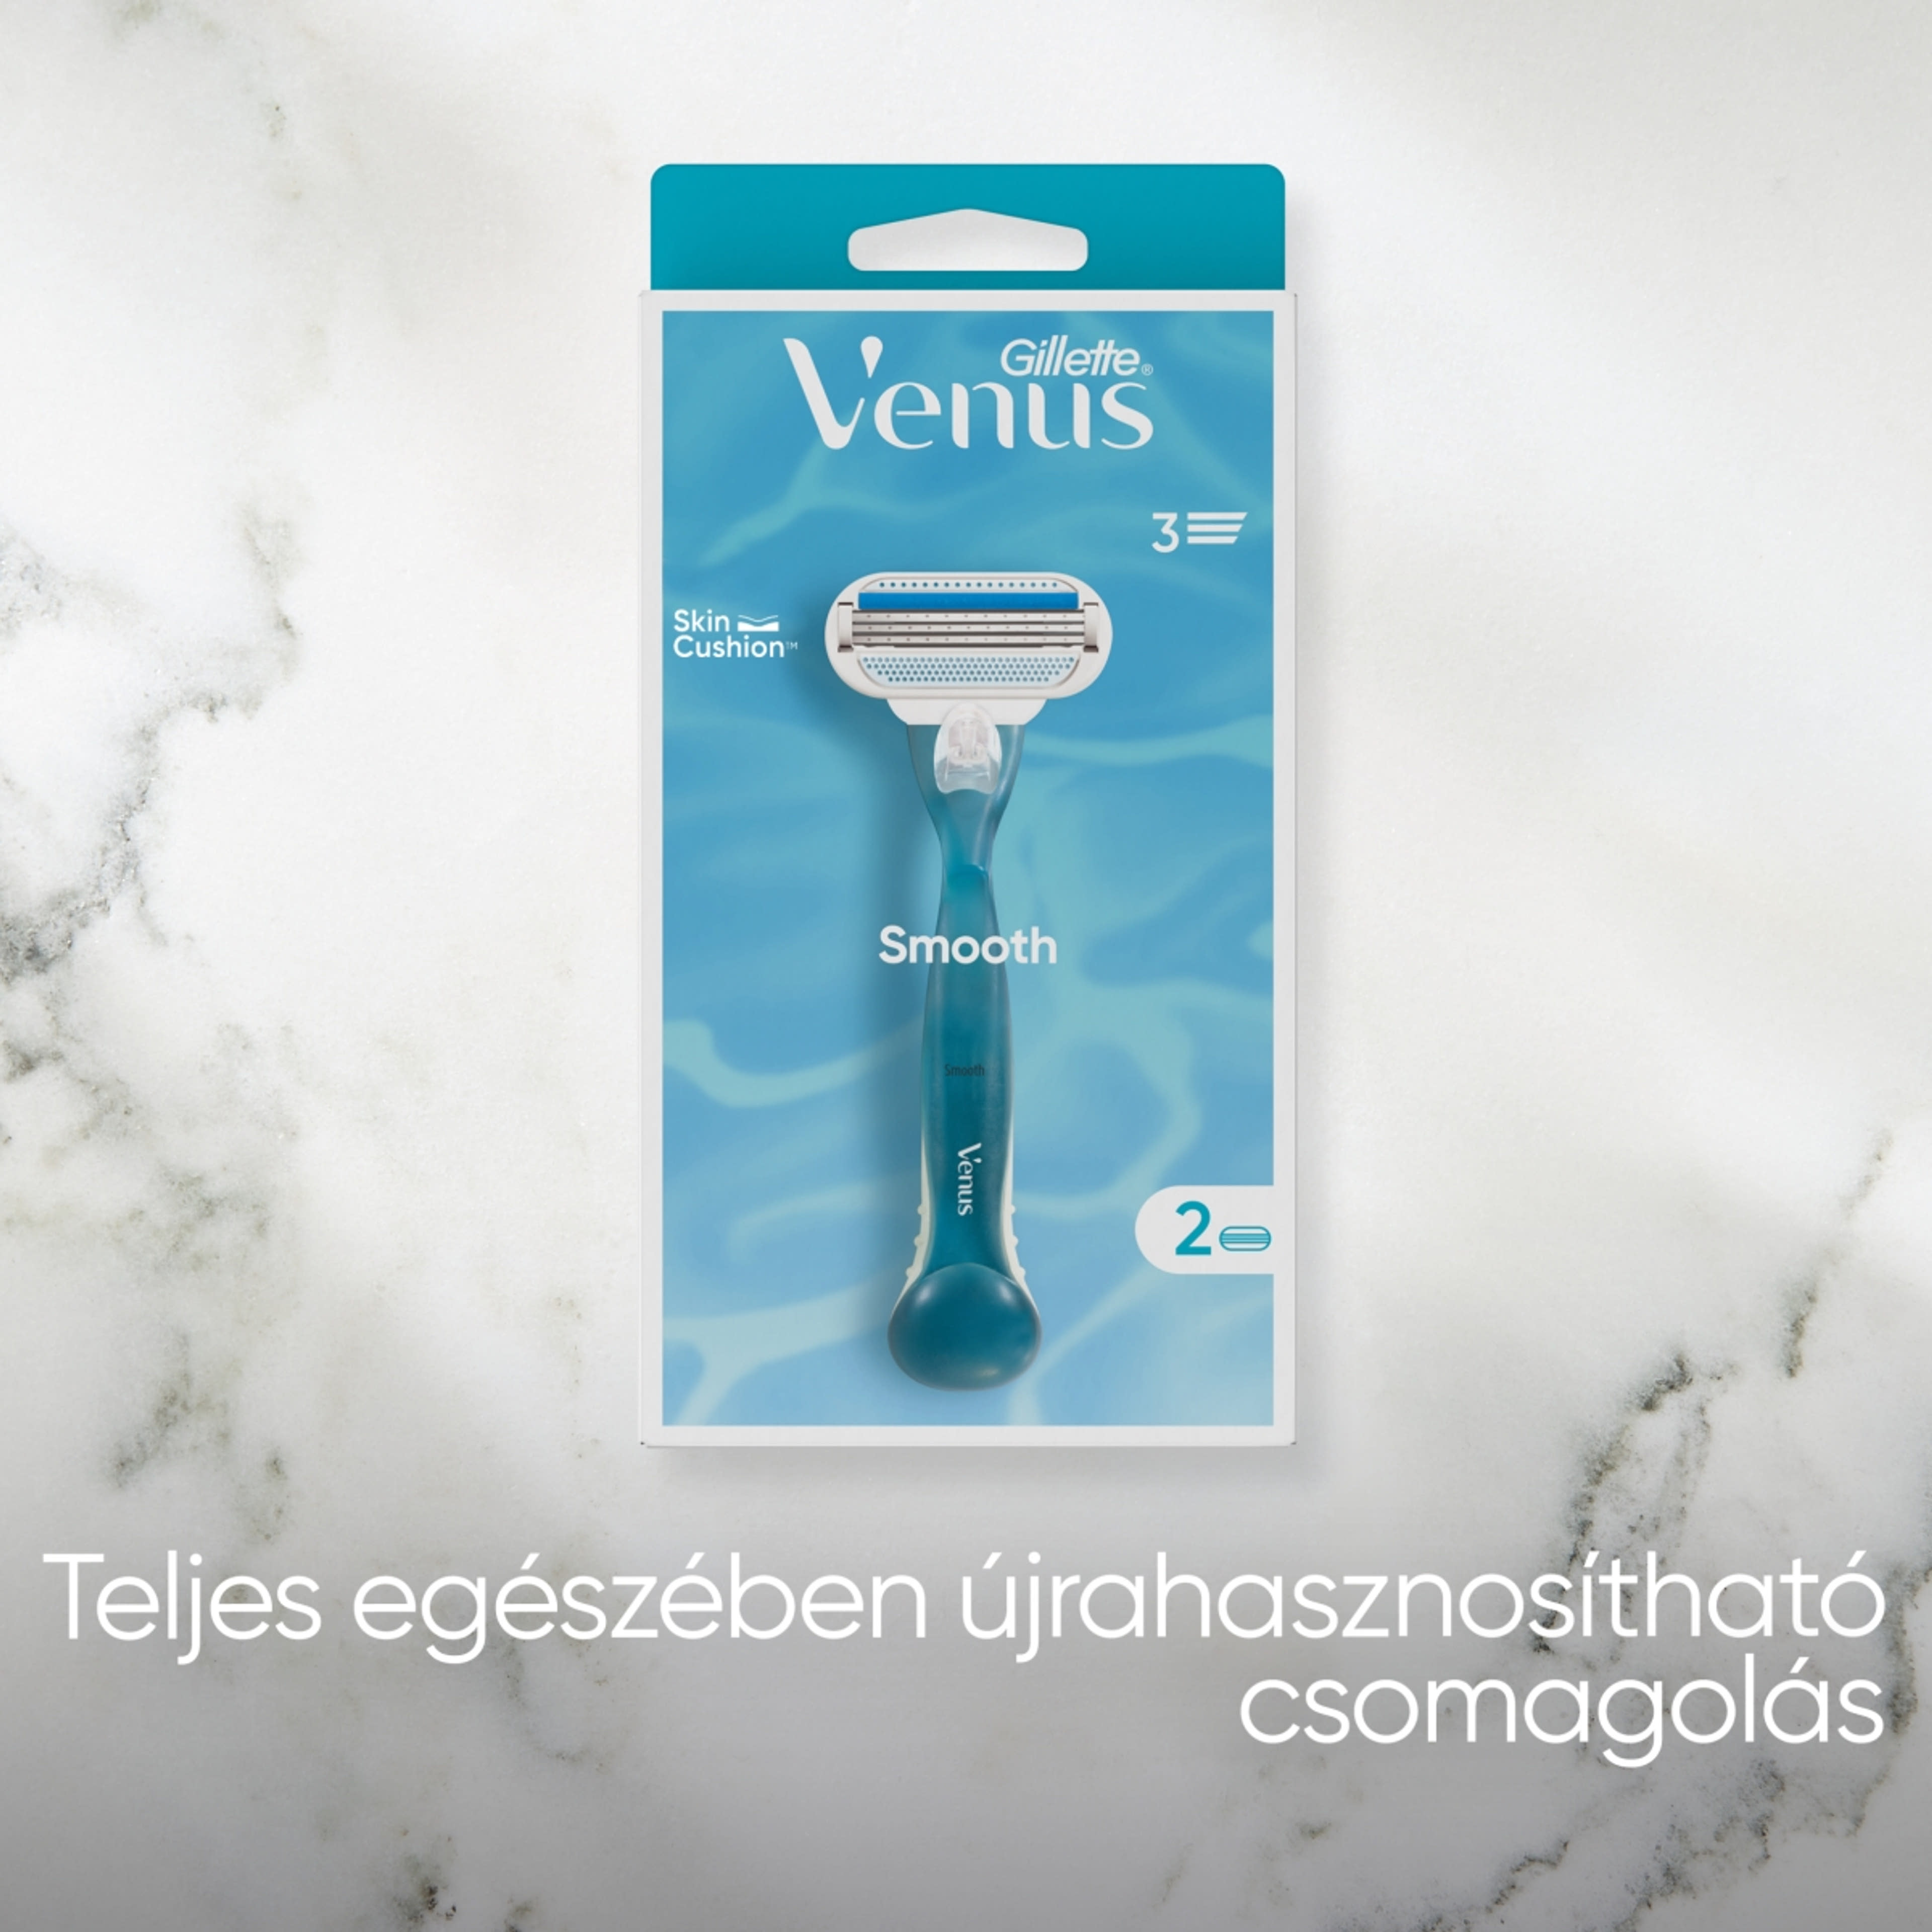 Gillette Venus borotvakészülék és borotvabetét - 1 db-7